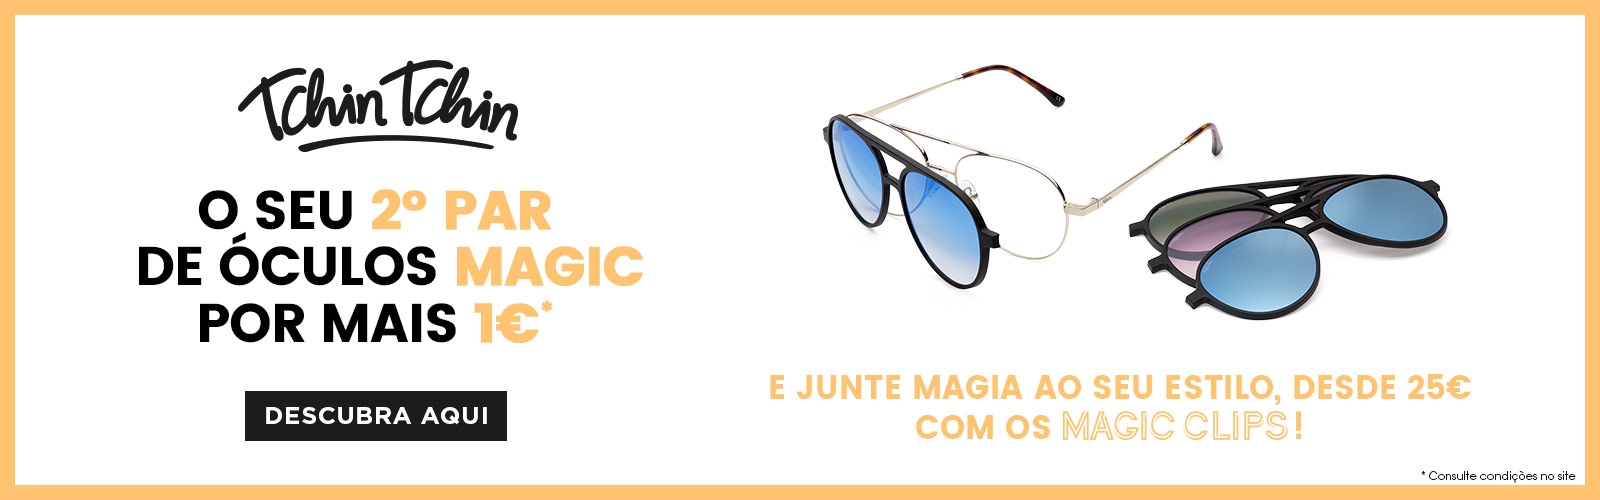 Escolha o seu segundo par de óculos de sol por apenas mais 1€! 